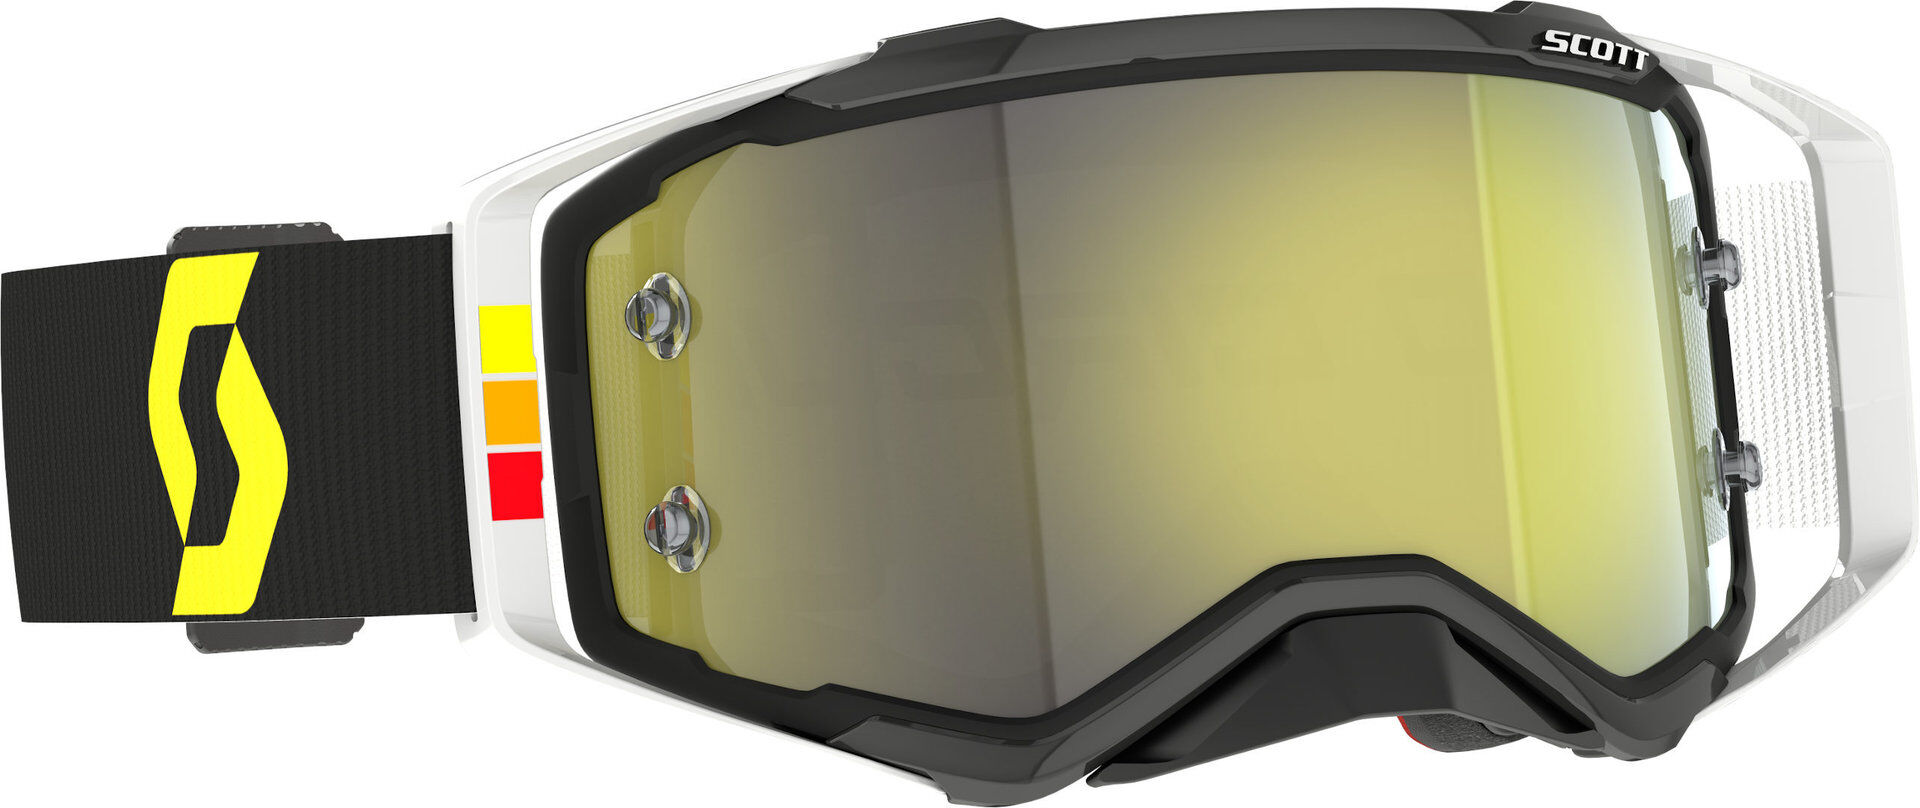 scott prospect pro circuit occhiali da motocross giallo unica taglia